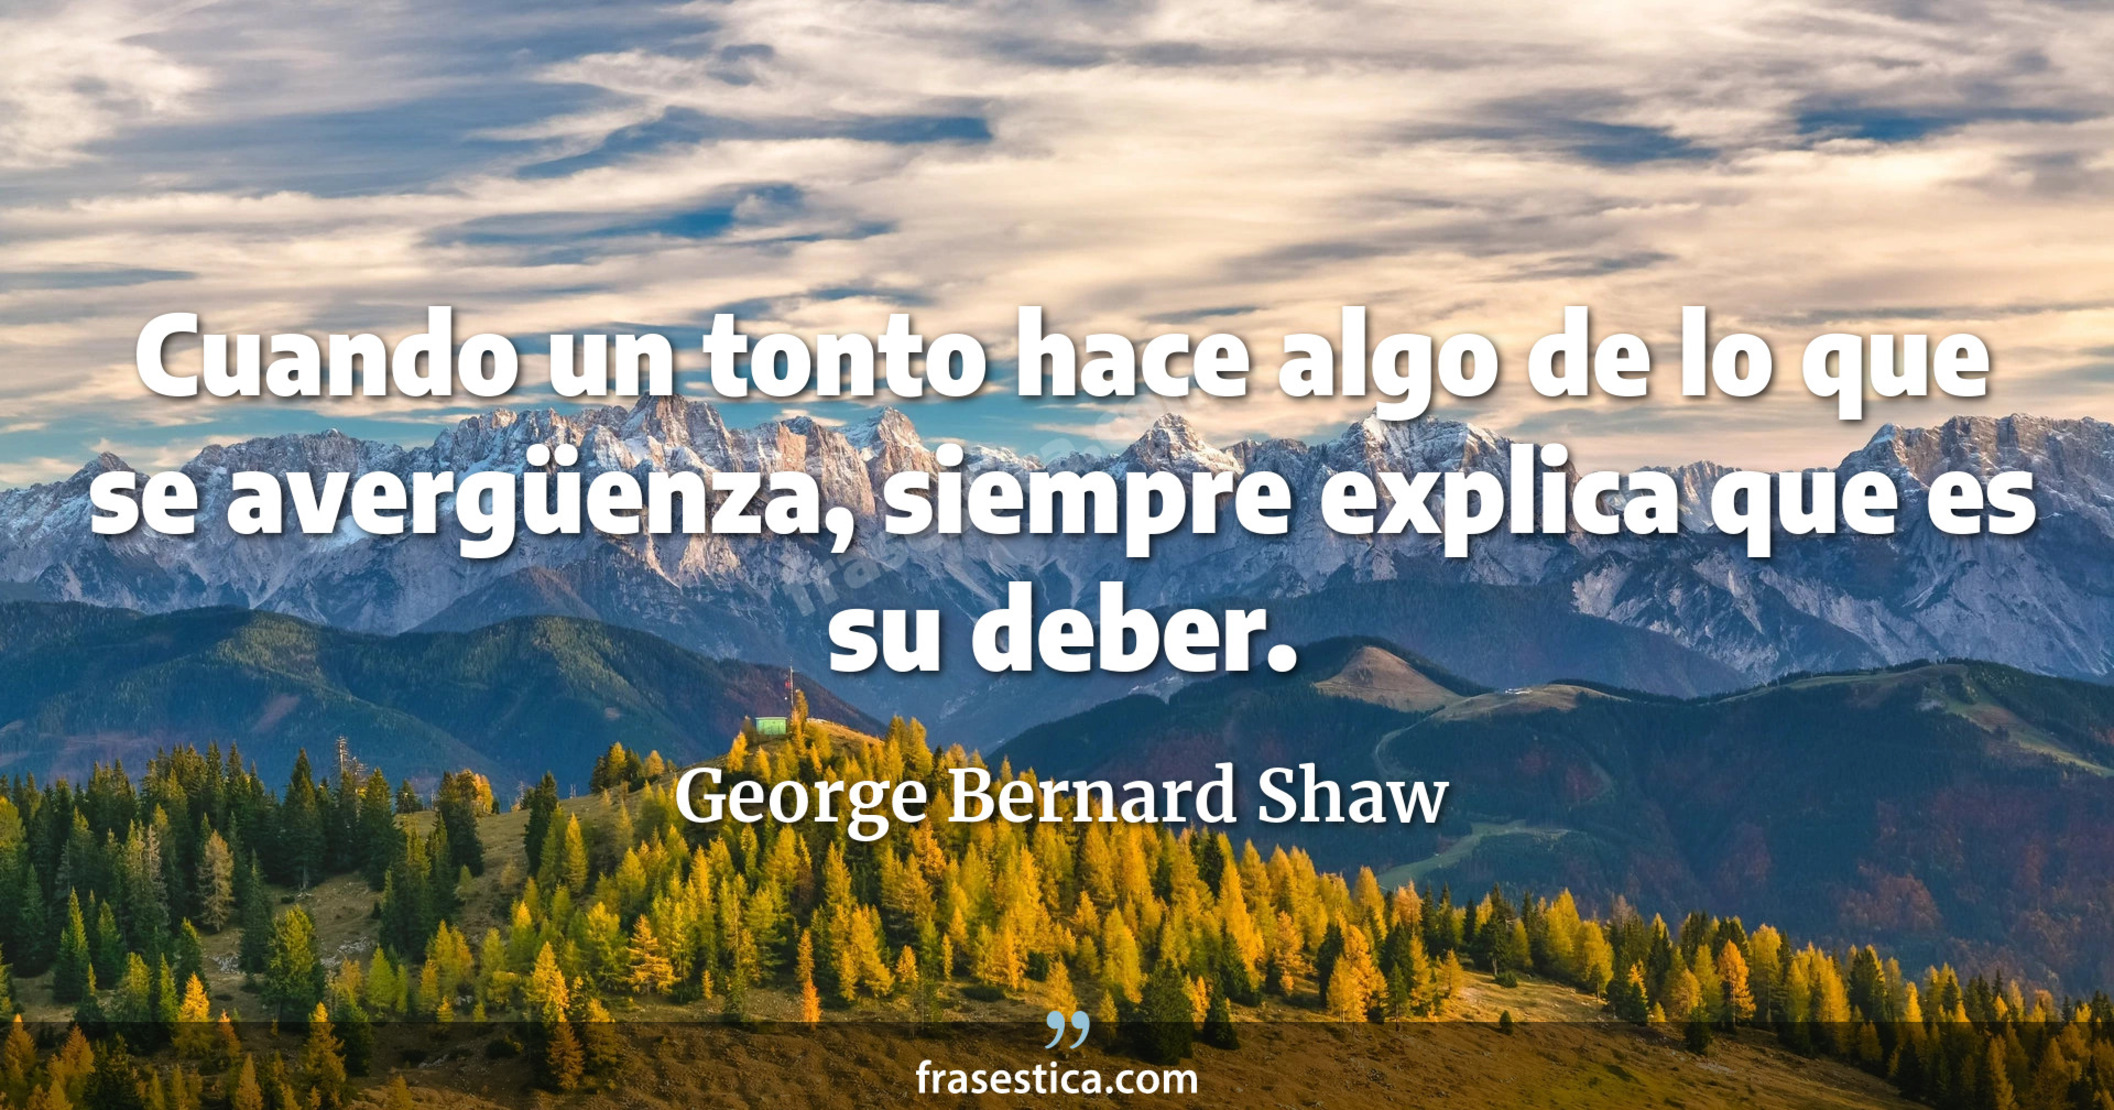 Cuando un tonto hace algo de lo que se avergüenza, siempre explica que es su deber. - George Bernard Shaw